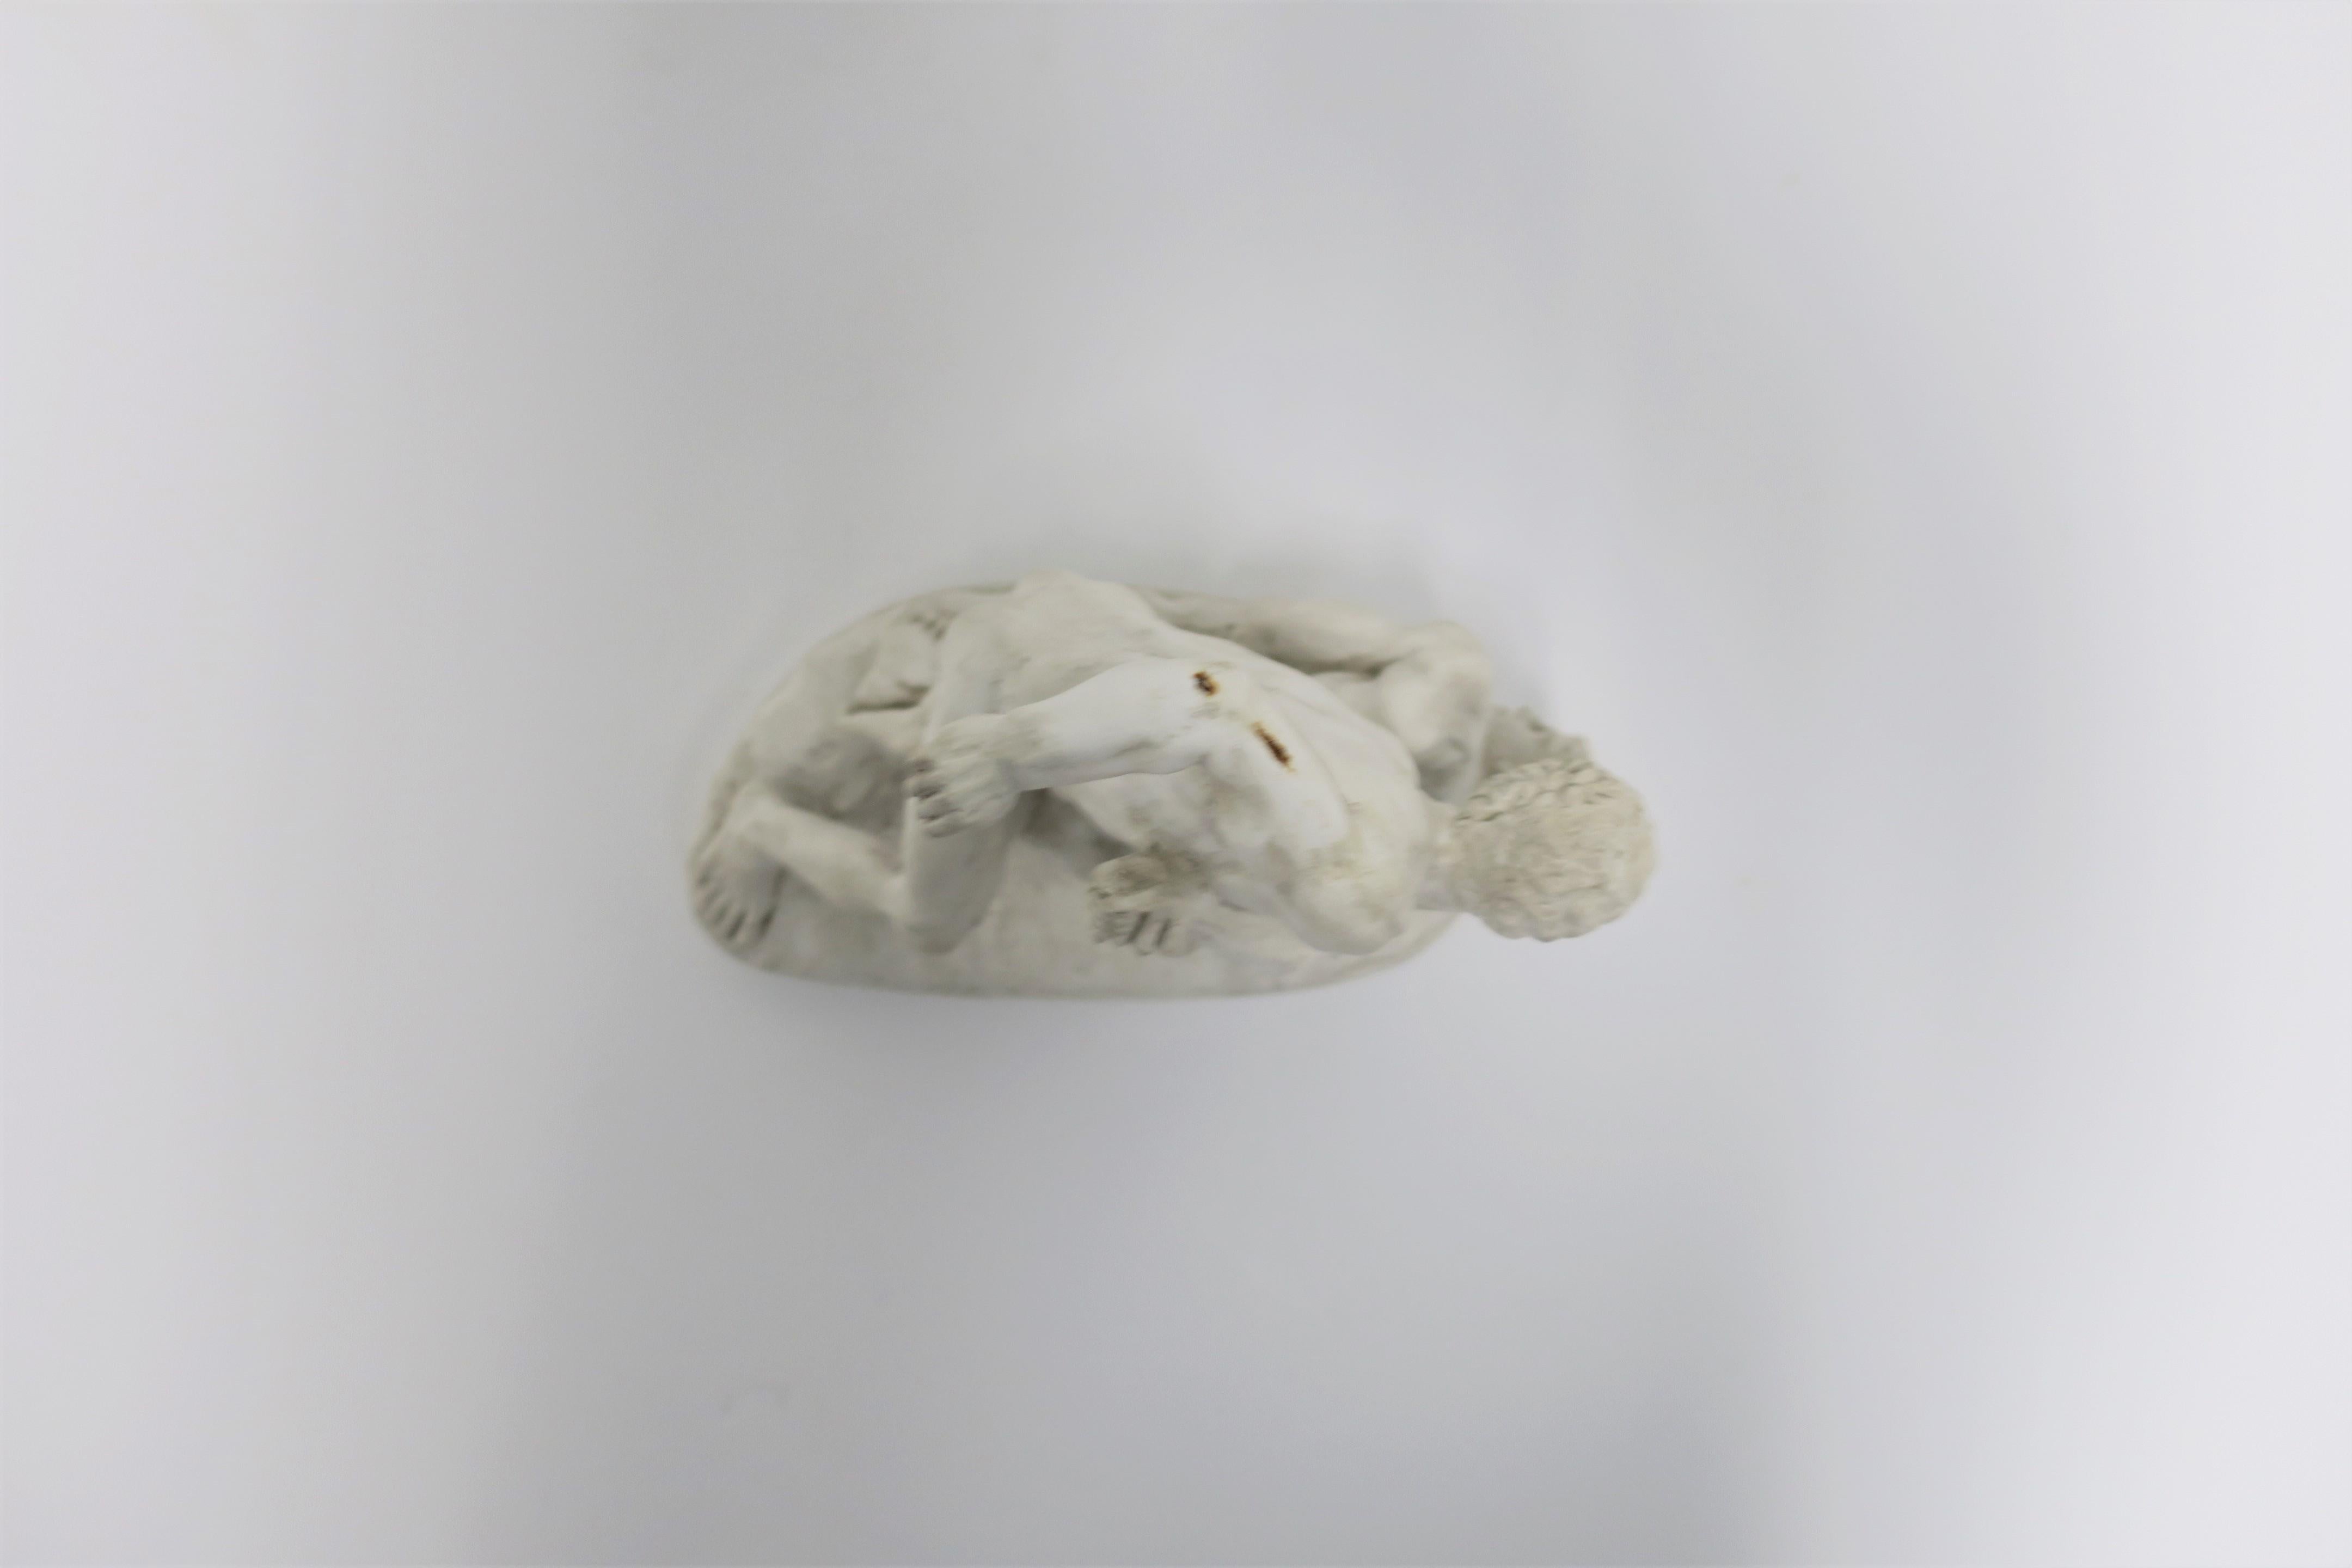 Greco-Roman White Plaster Male Figurative Sculpture 1